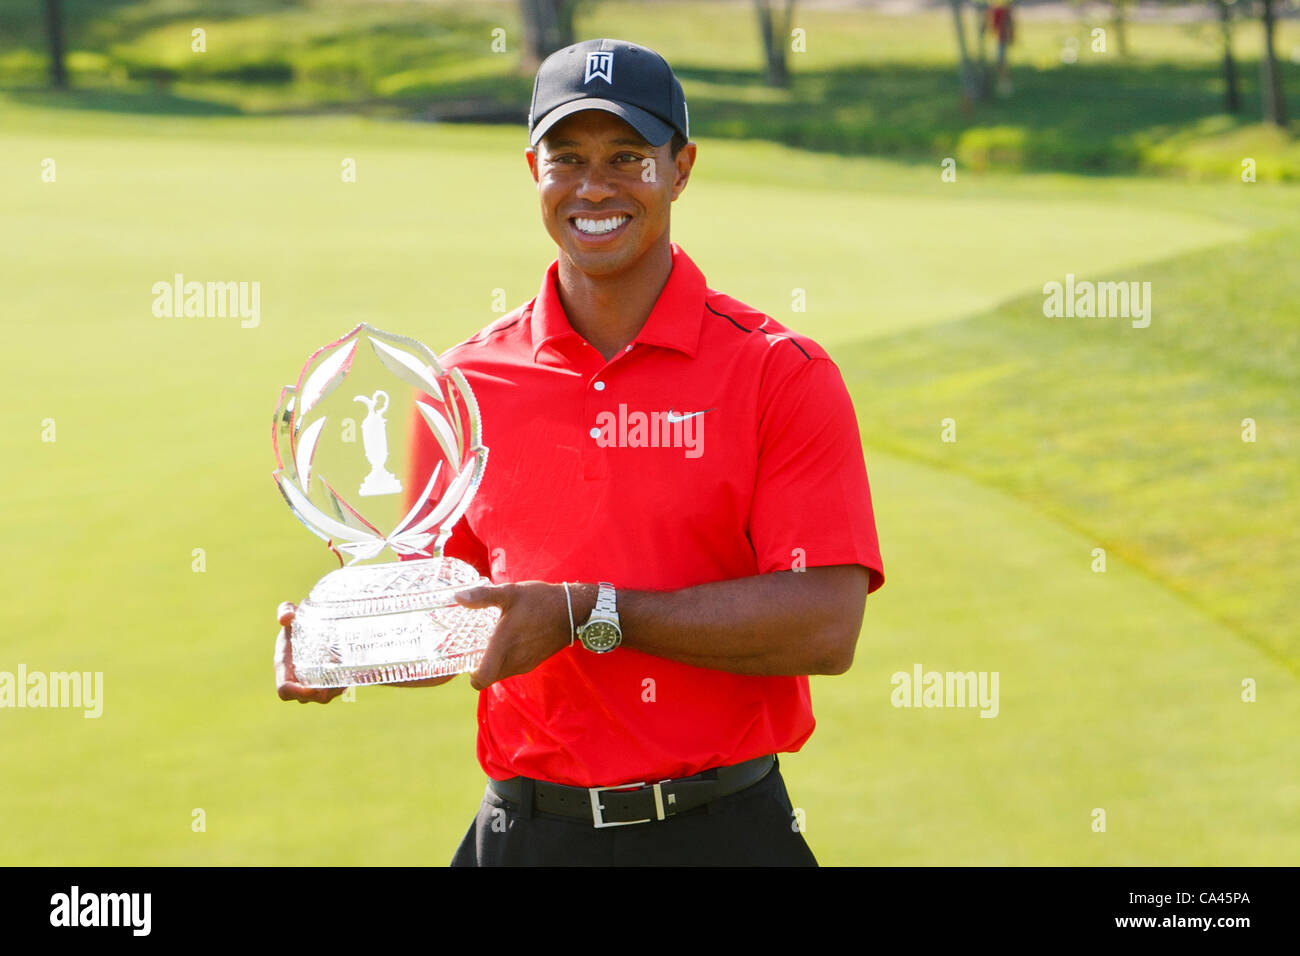 Giugno 03, 2012: Tiger Woods pone per fotografie tenendo premuto il Memorial Trophy durante la cerimonia di premiazione per il Memorial Golf Tournament giocato a Muirfield Village Golf Club in Dublin, Ohio. Foto Stock